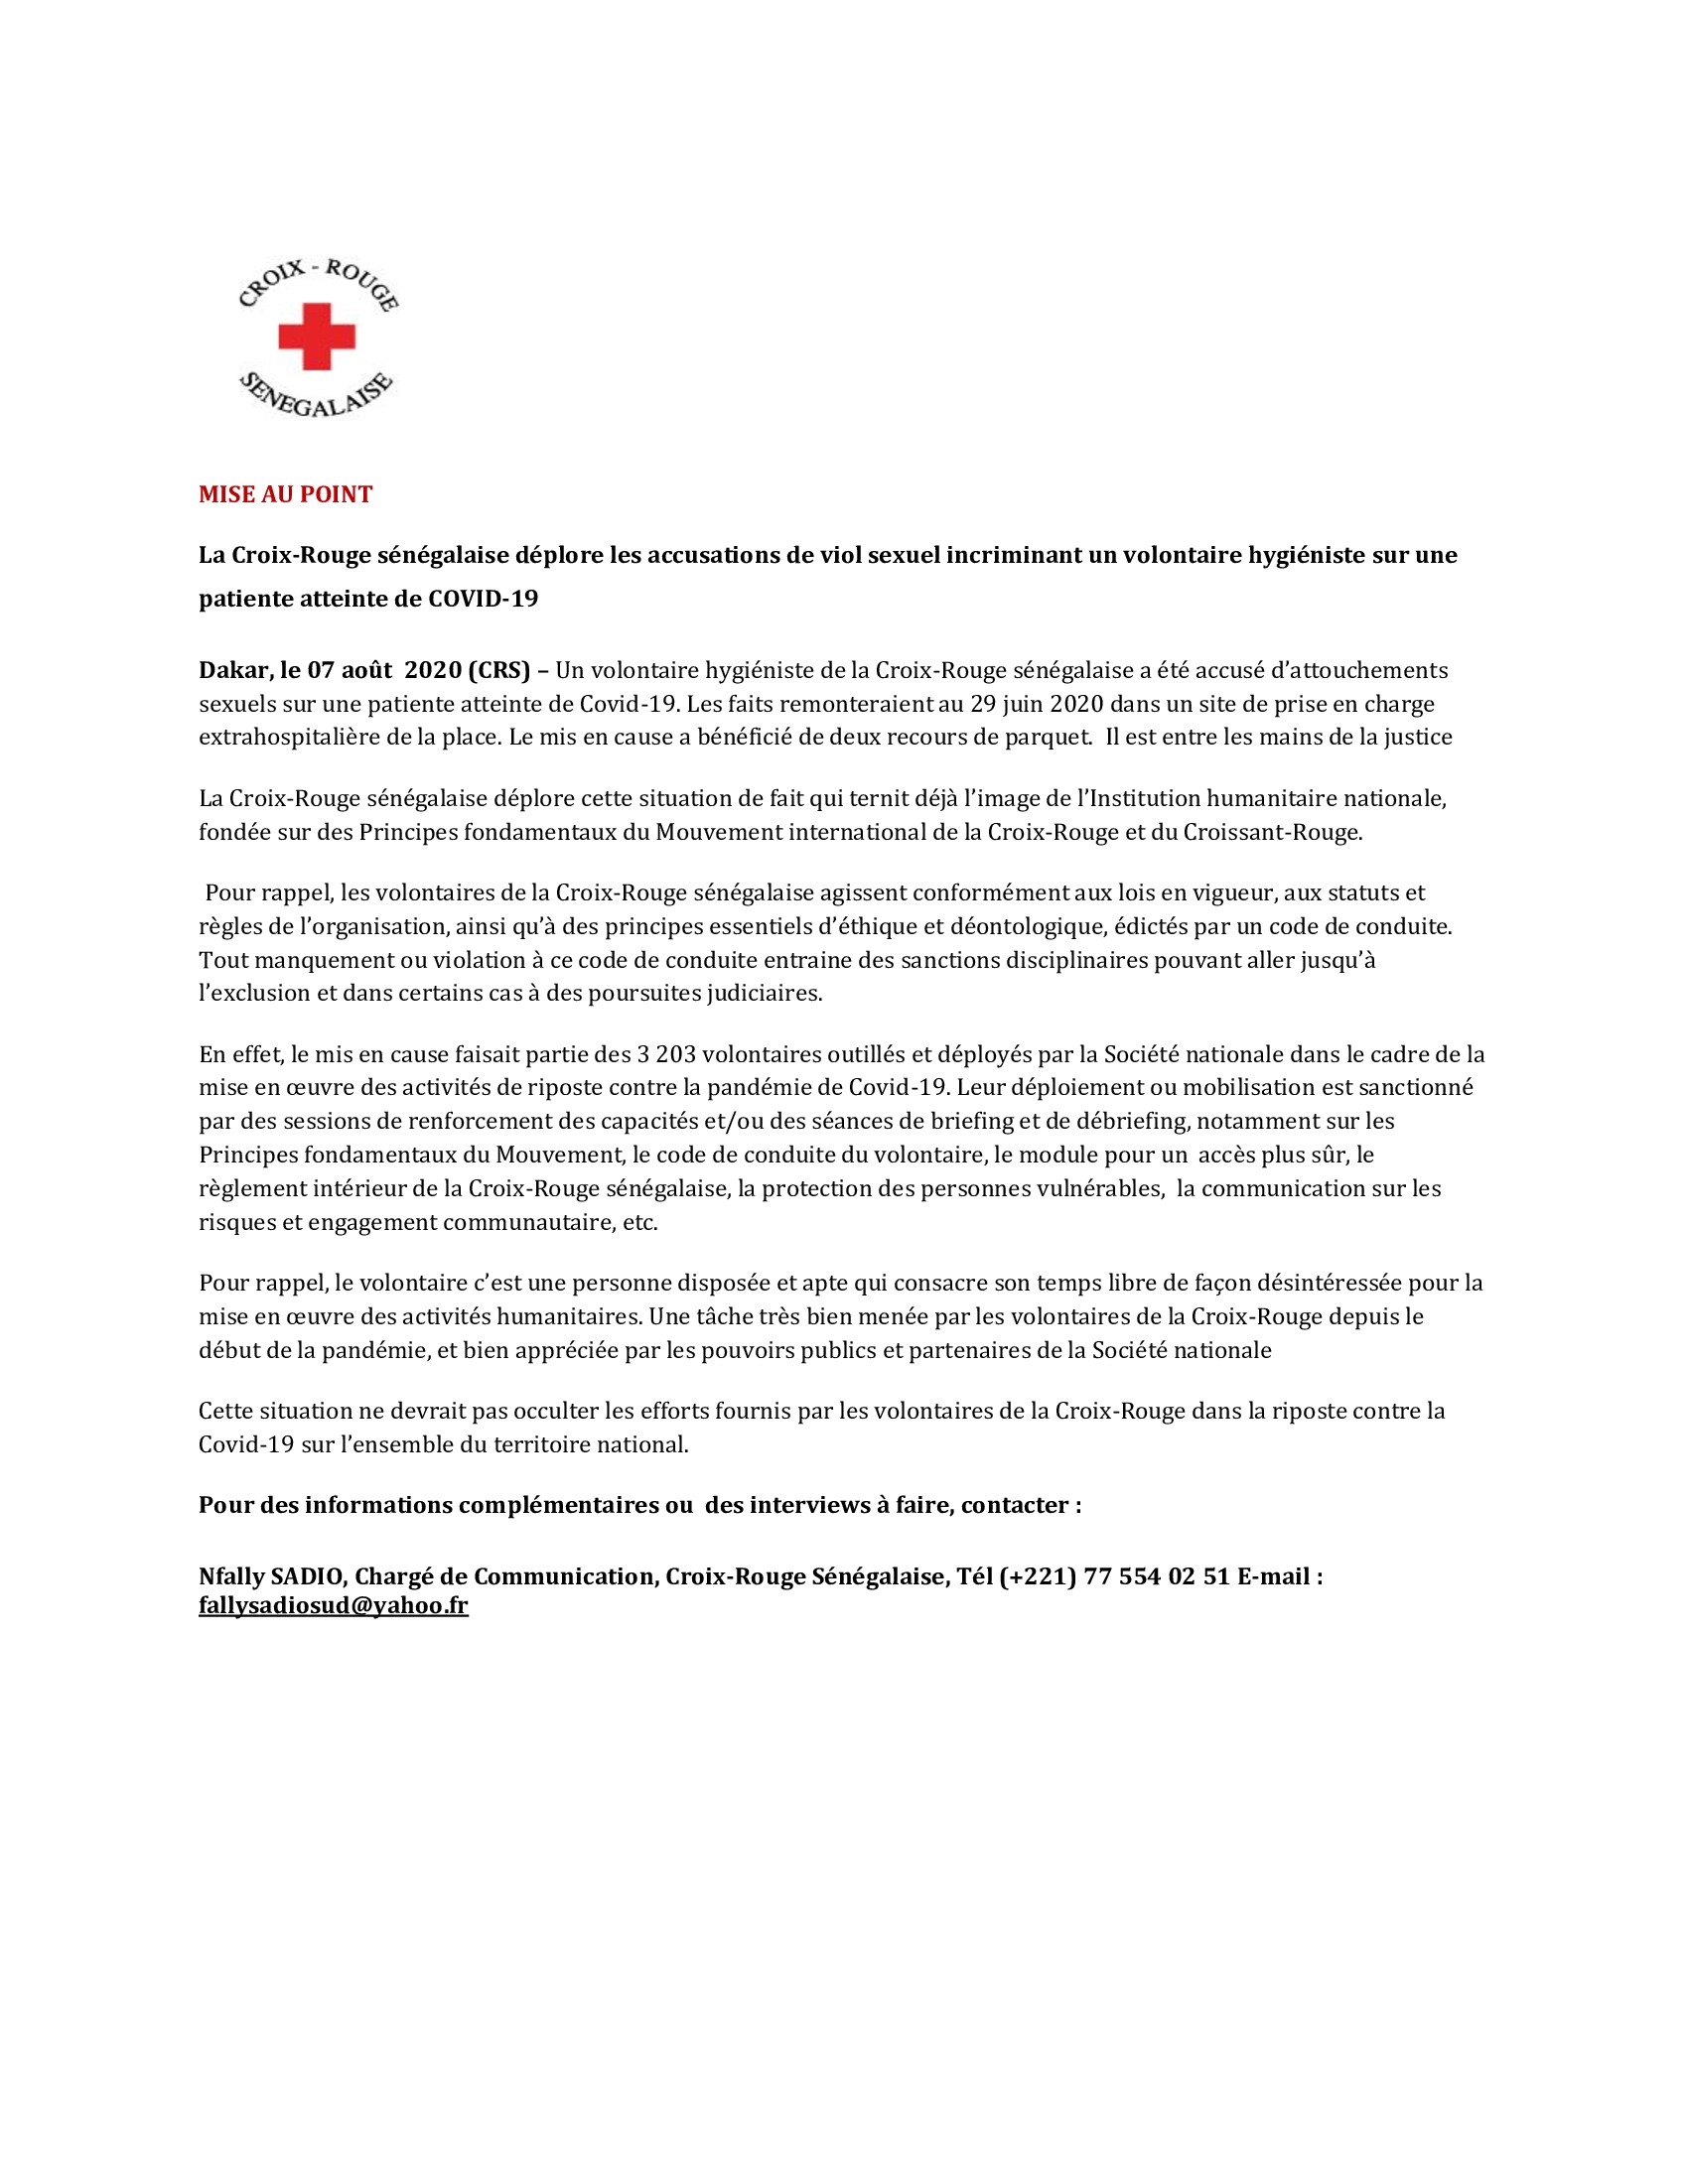 MISE AU POINT: La Croix-Rouge sénégalaise déplore les accusations de vi0l Sexuel incriminant un volontaire hygiéniste sur une patiente atteinte de COVID-19